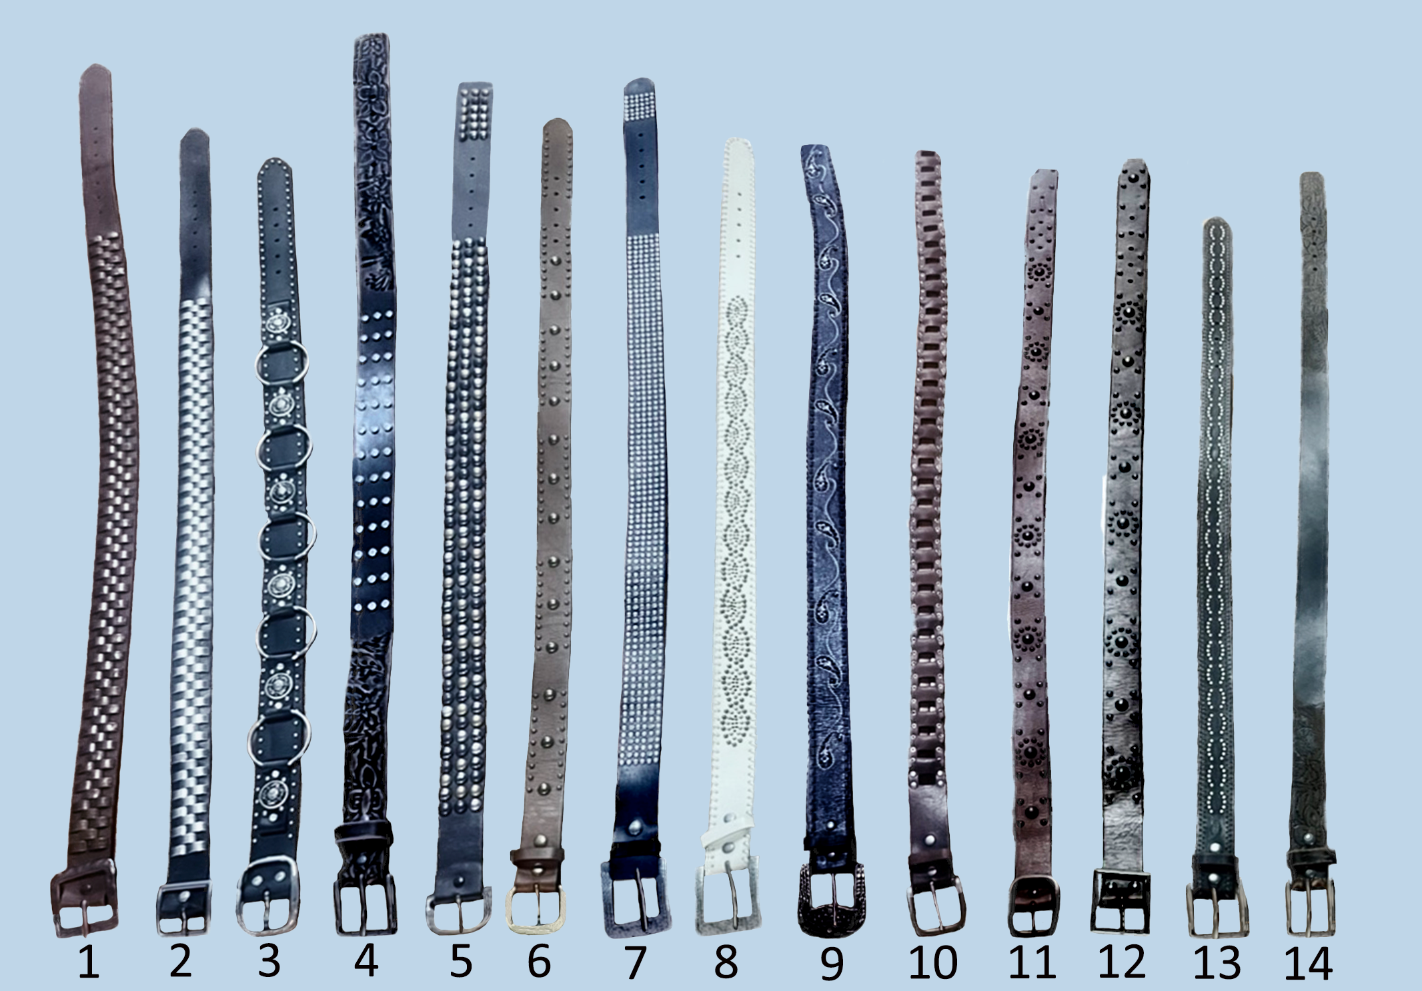 100% leather branded embellished belts